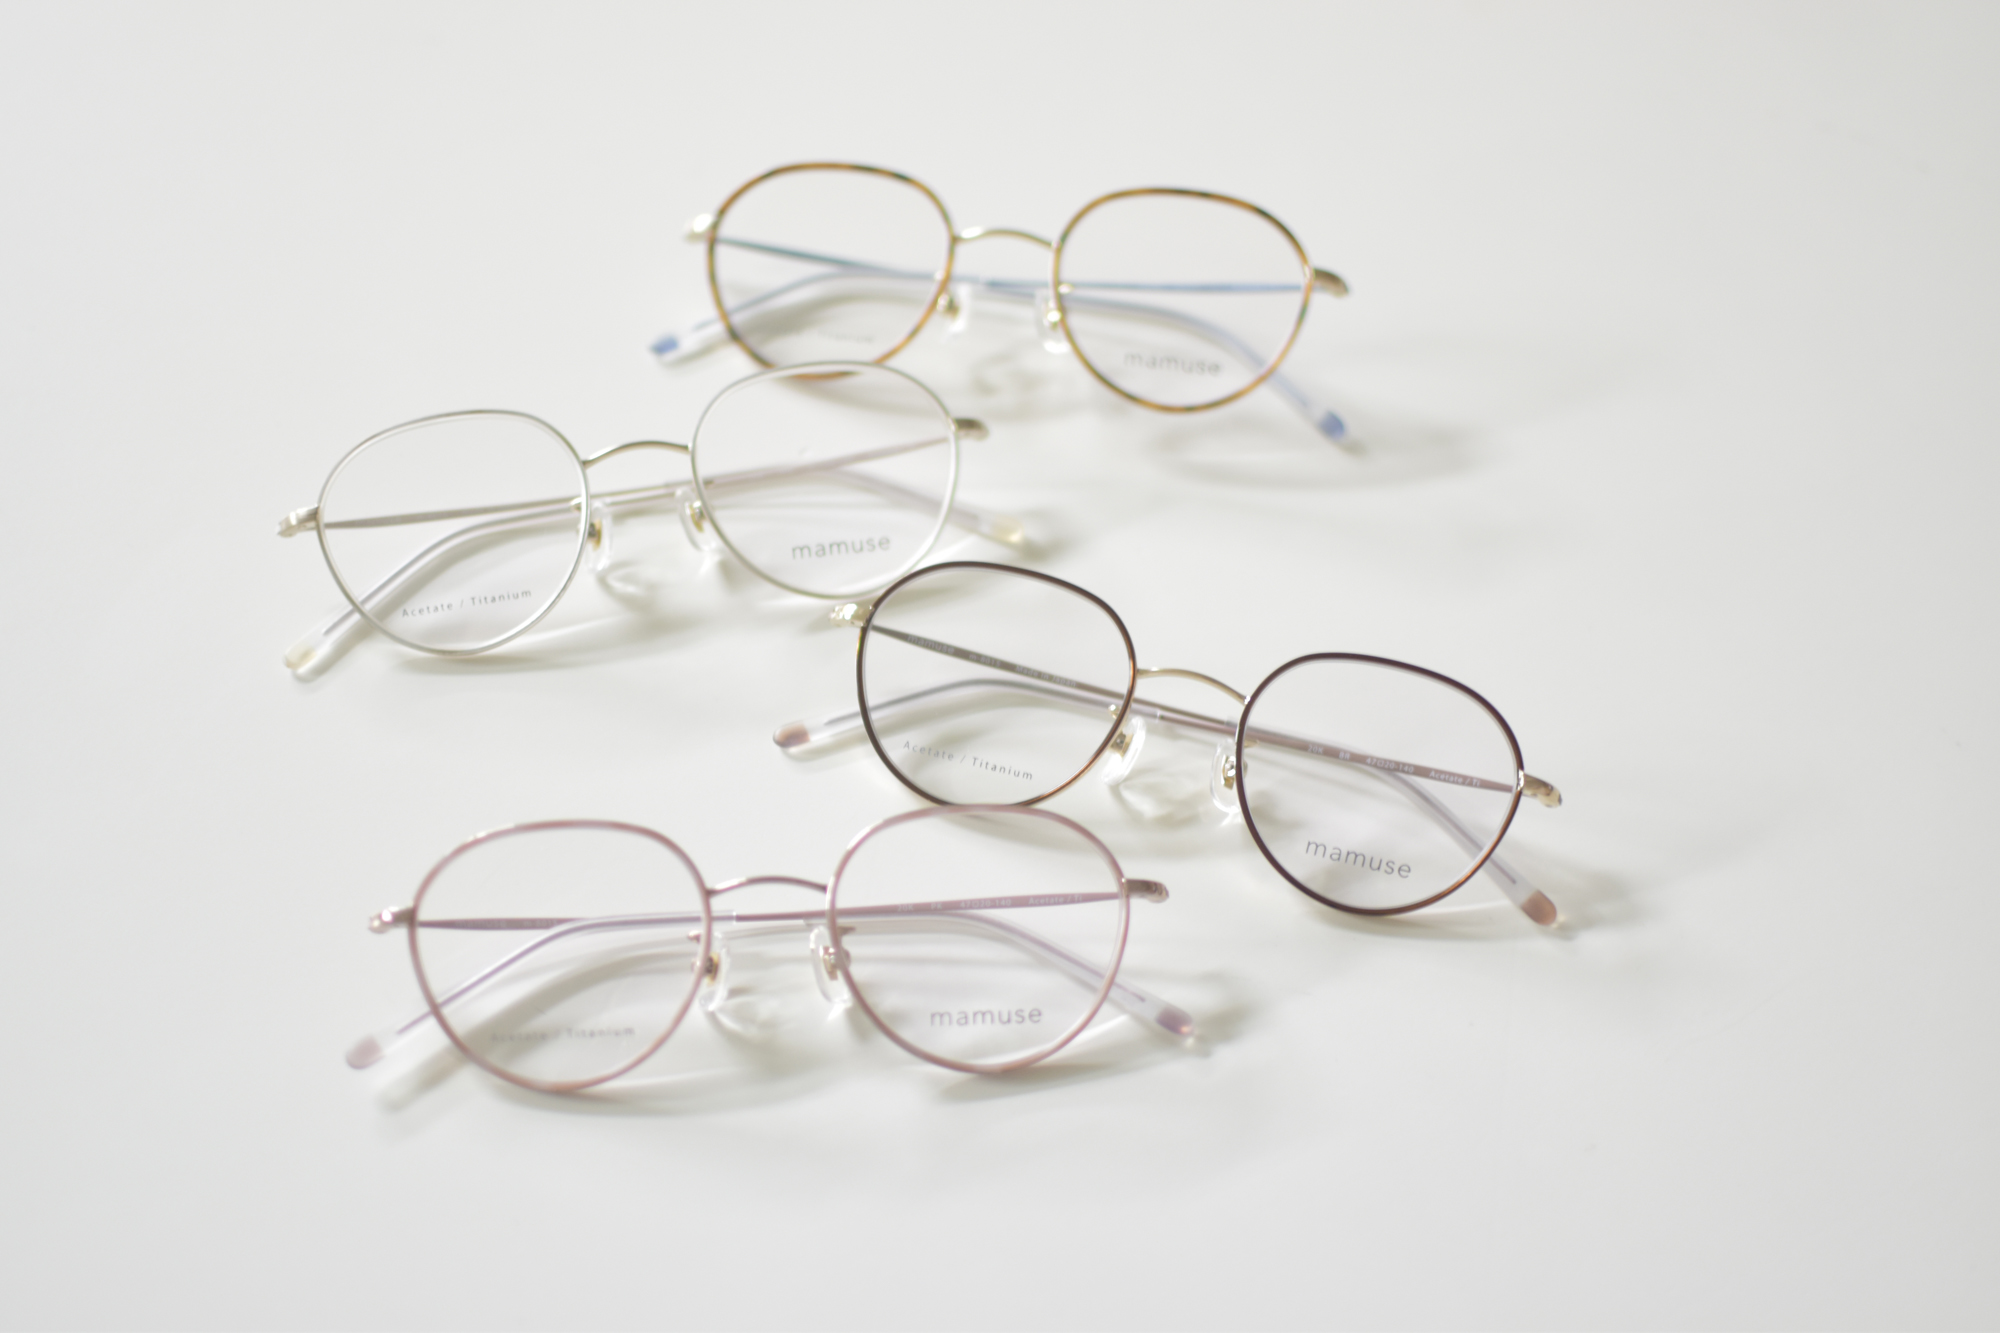 mamuseマミューズ / 都会的センスを持った大人の女性のために作り出された眼鏡 | 東京・表参道・青山にある”さばえ・ふくい産”の眼鏡